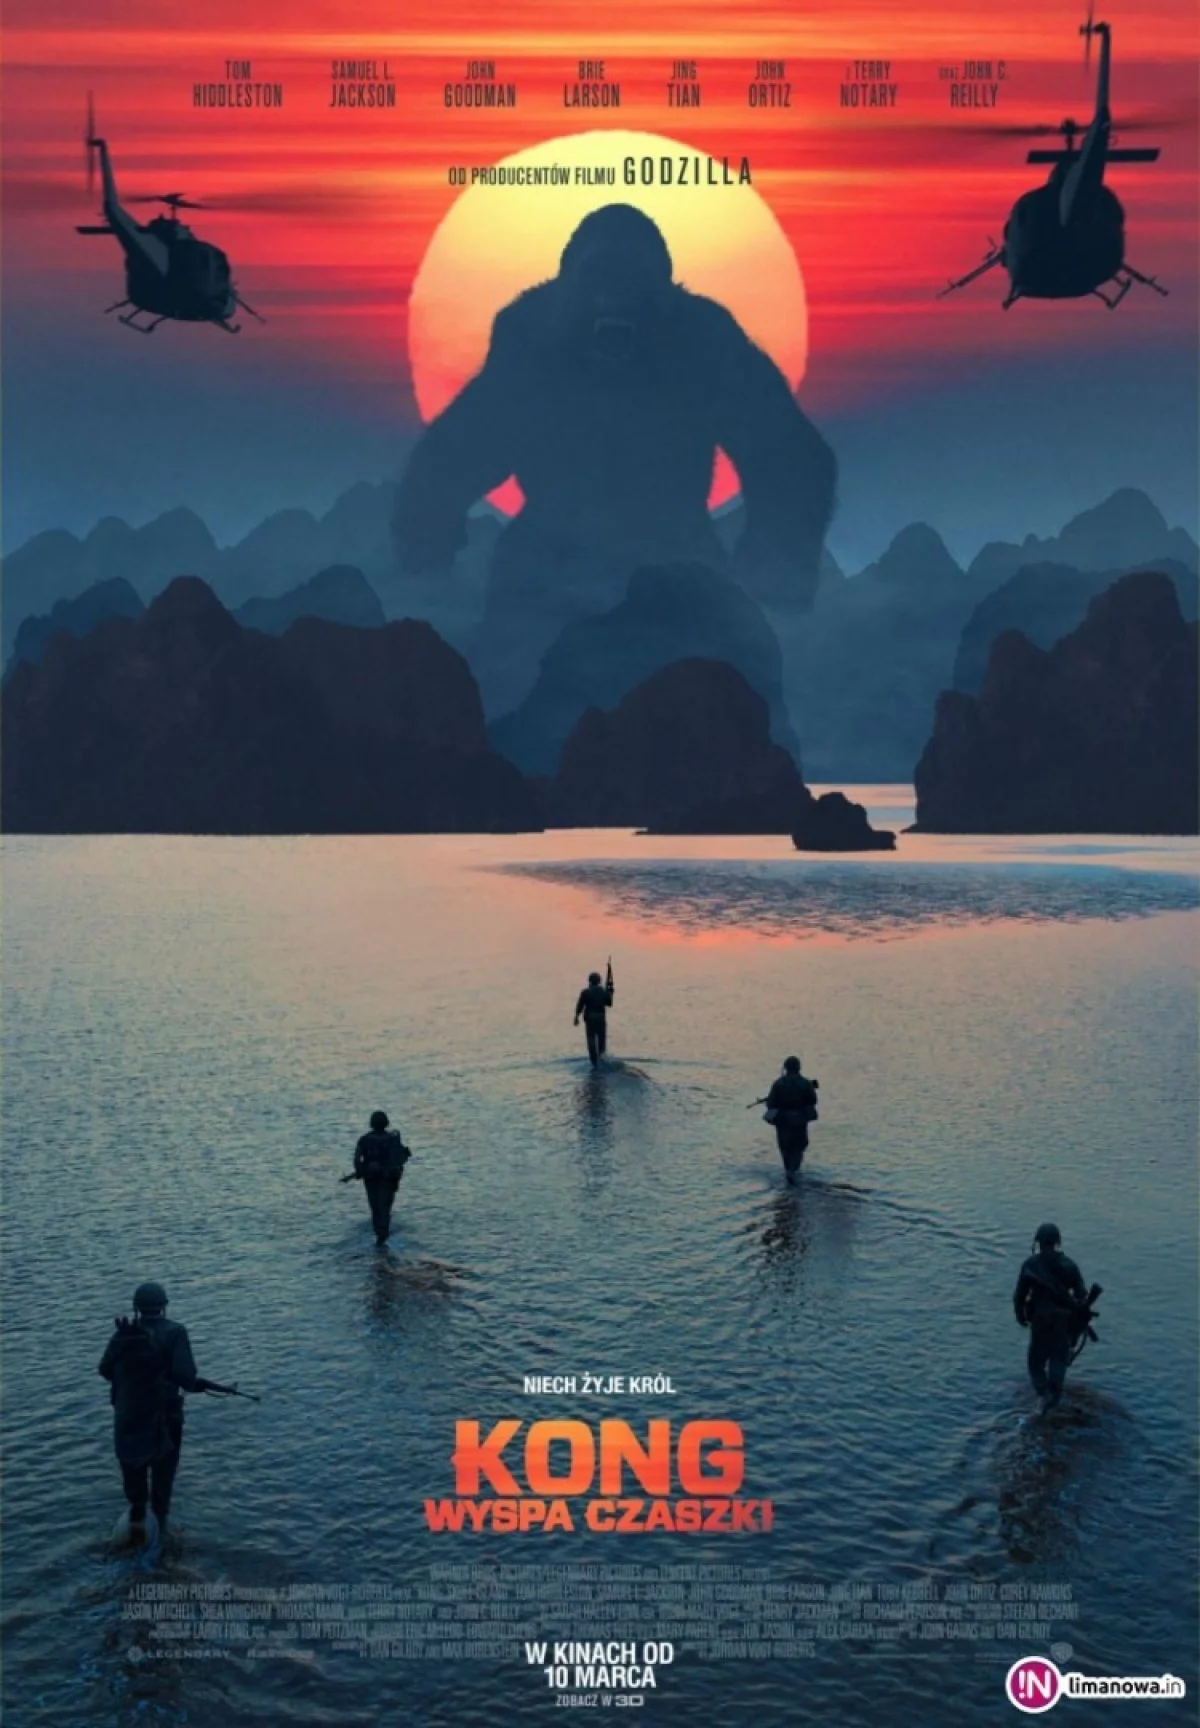 „Kong: Wyspa czaszki” od 24 marca w kinie Klaps